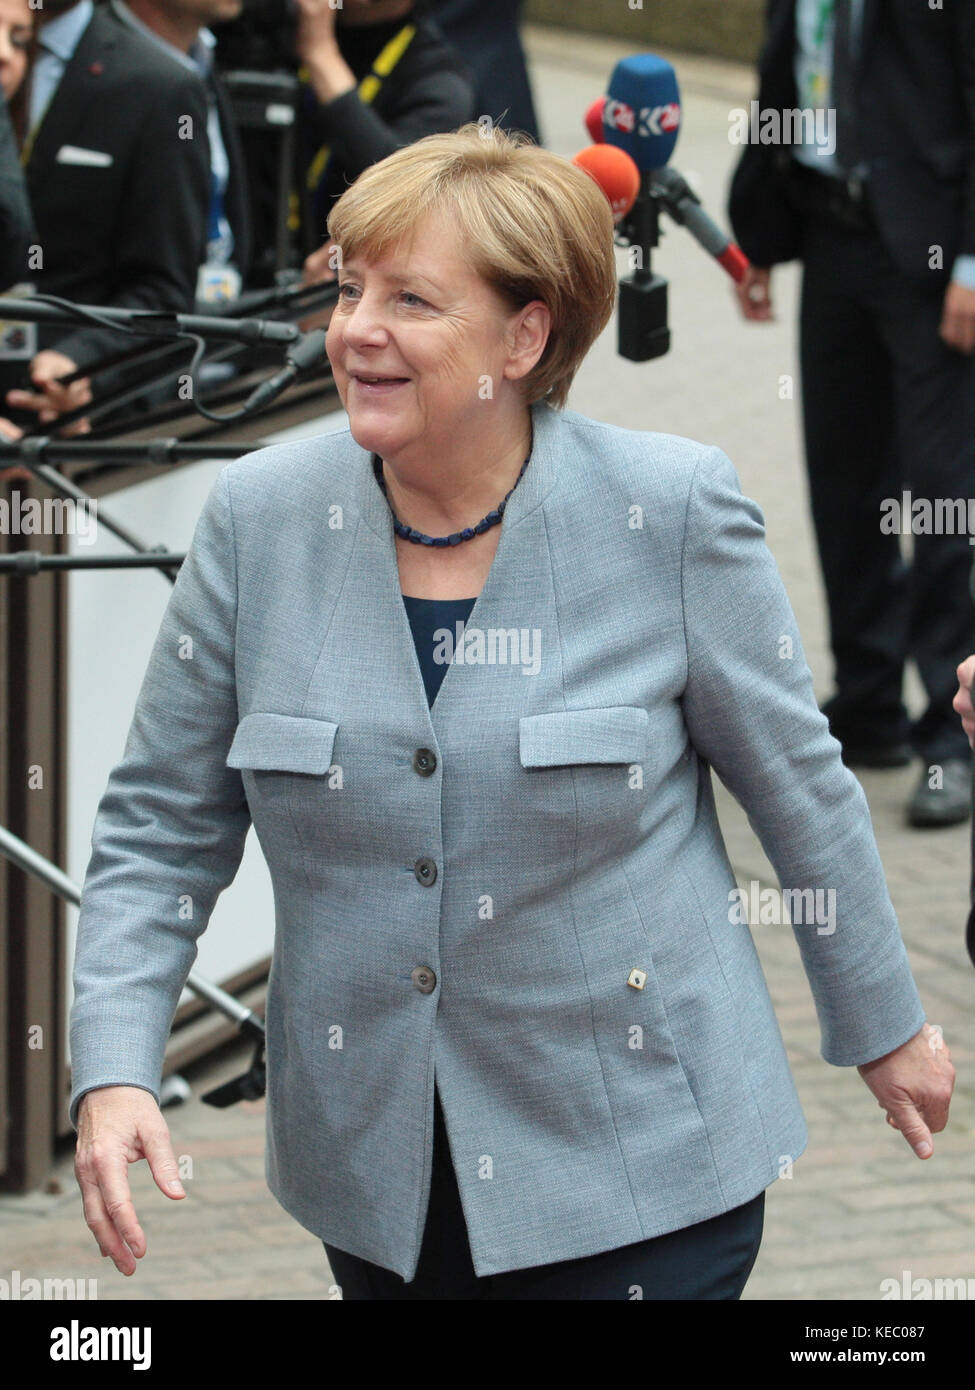 Bruselas, Bélgica. 19 oct, 2017. Angela Merkel, Canciller Federal de Alemania, en el Consejo Europeo, el crédito: leo cavallo/alamy live news Foto de stock